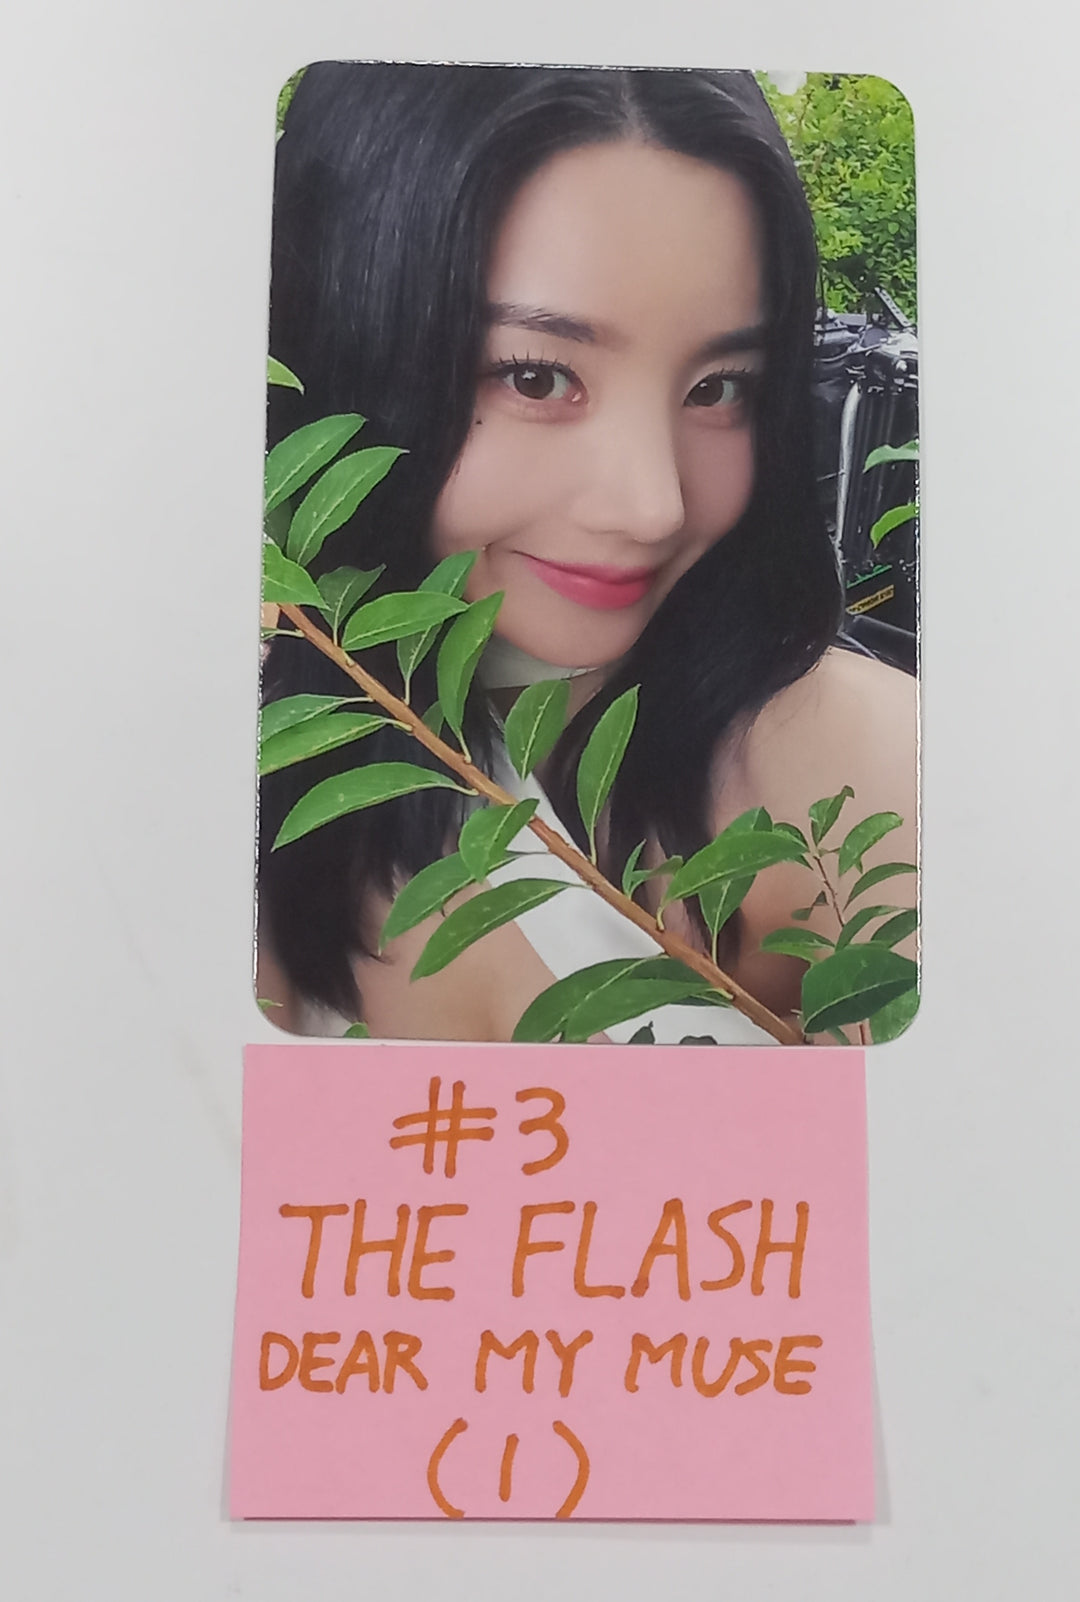 クォン・ウンビ 1st シングル「The Flash」 - Dear My Muse ファンサイン会フォトカード [23.08.25]